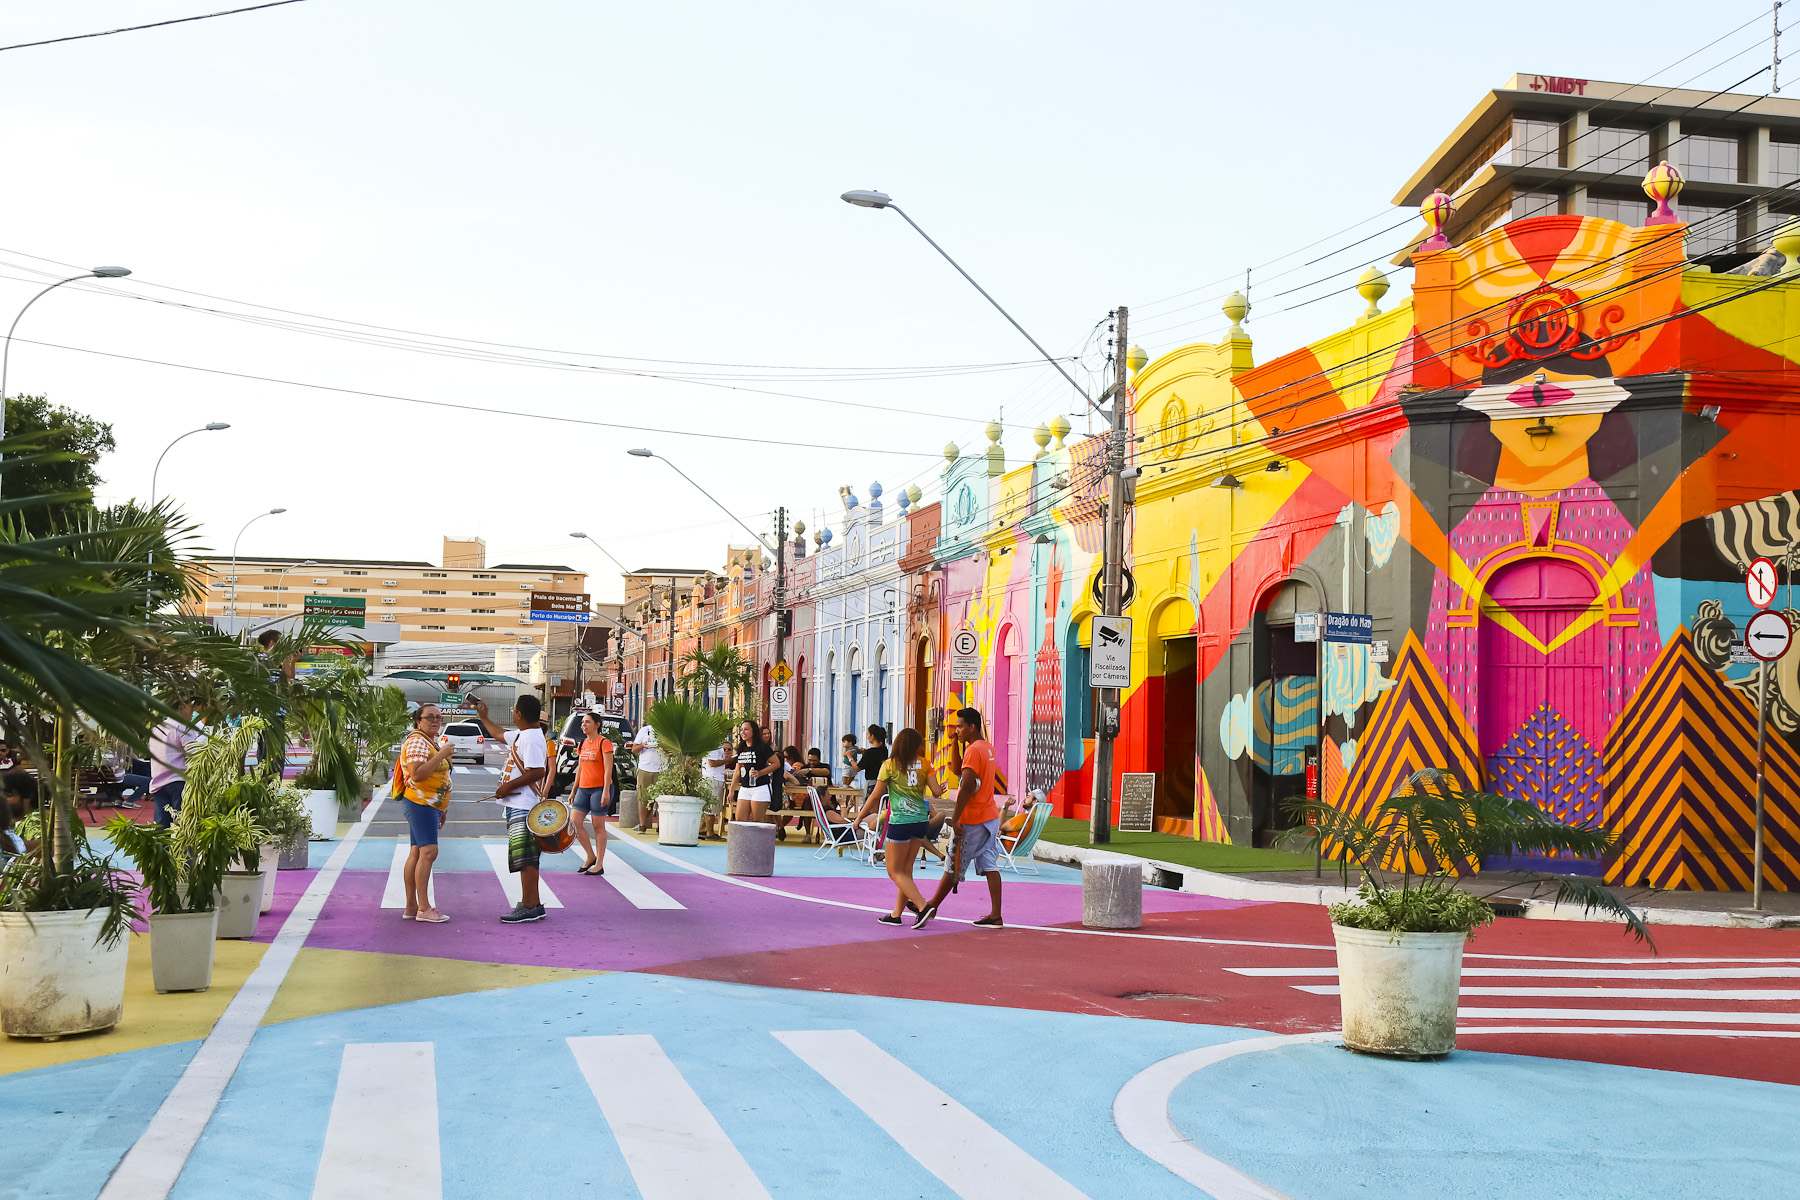 intervenção cidade da gente, com ruas pintadas de várias cores (azul, amarelo e rosa)